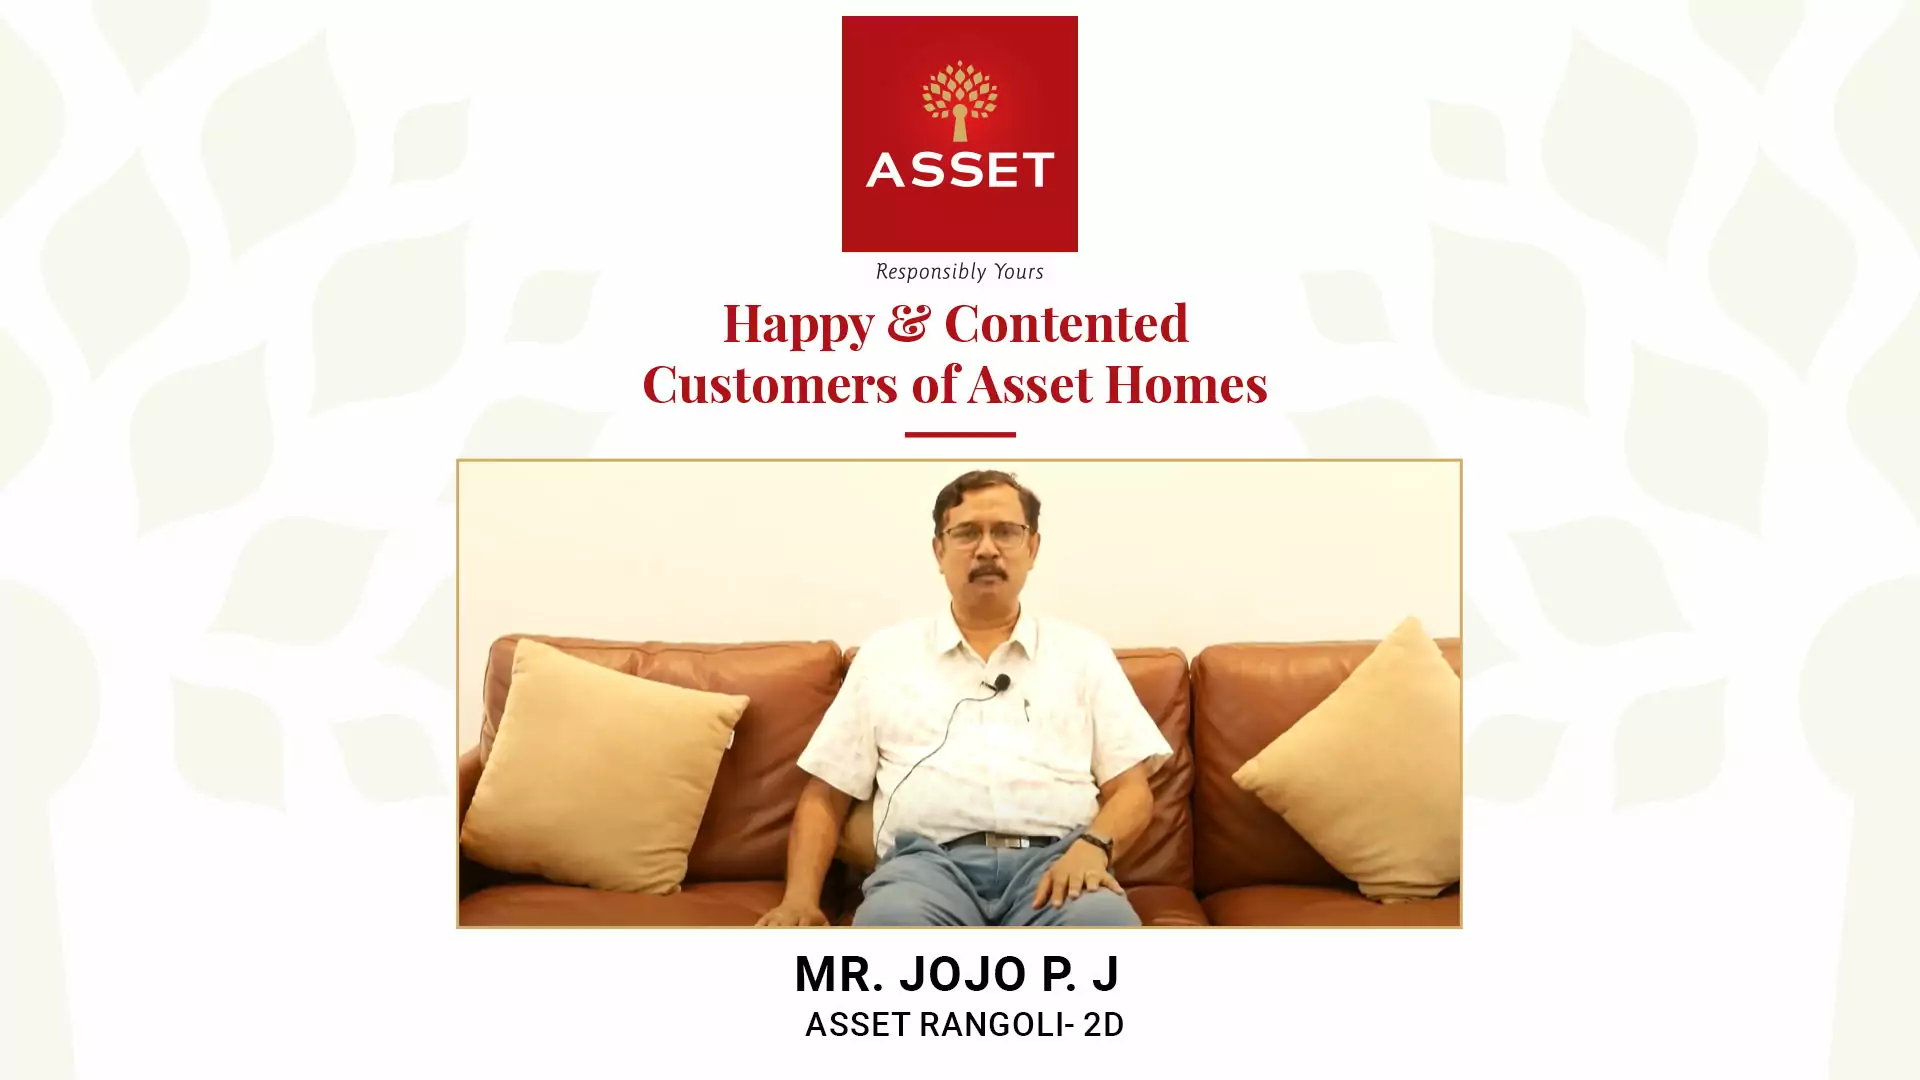 Mr. Jojo P. J, Asset Rangoli – 2D